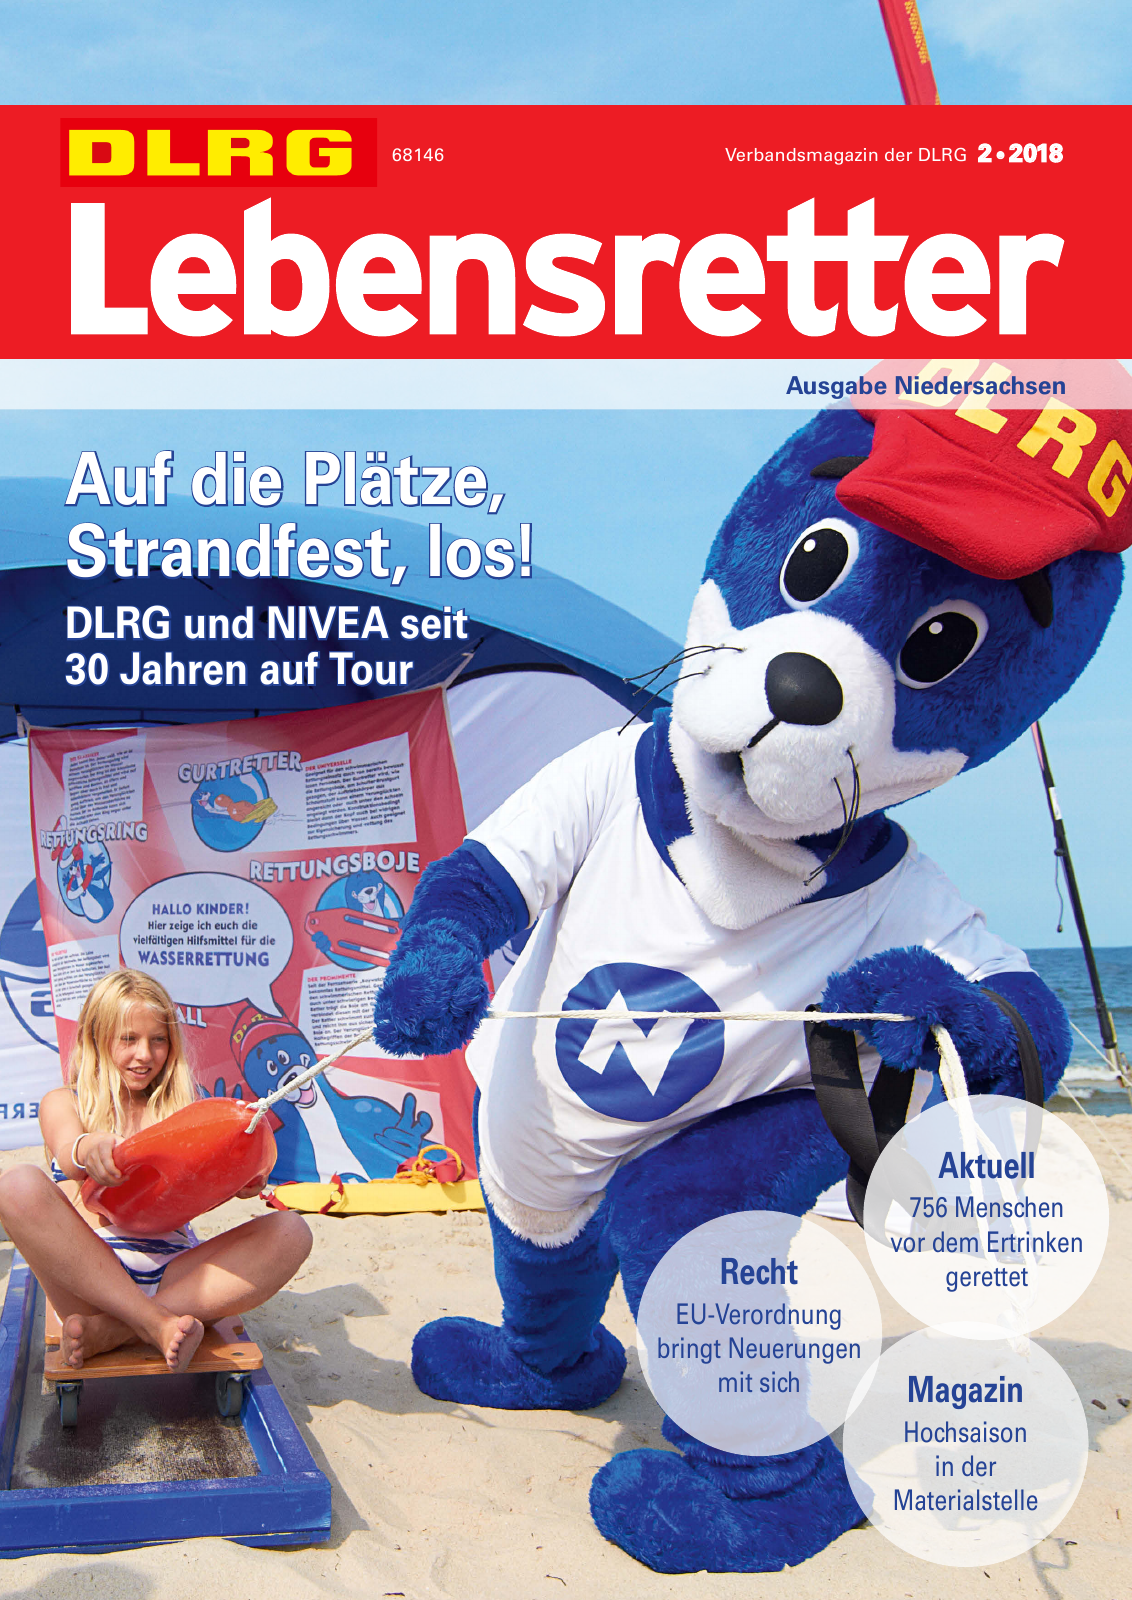 Vorschau Lebensretter 2/2018 - Regionalausgabe Niedersachsen Seite 1